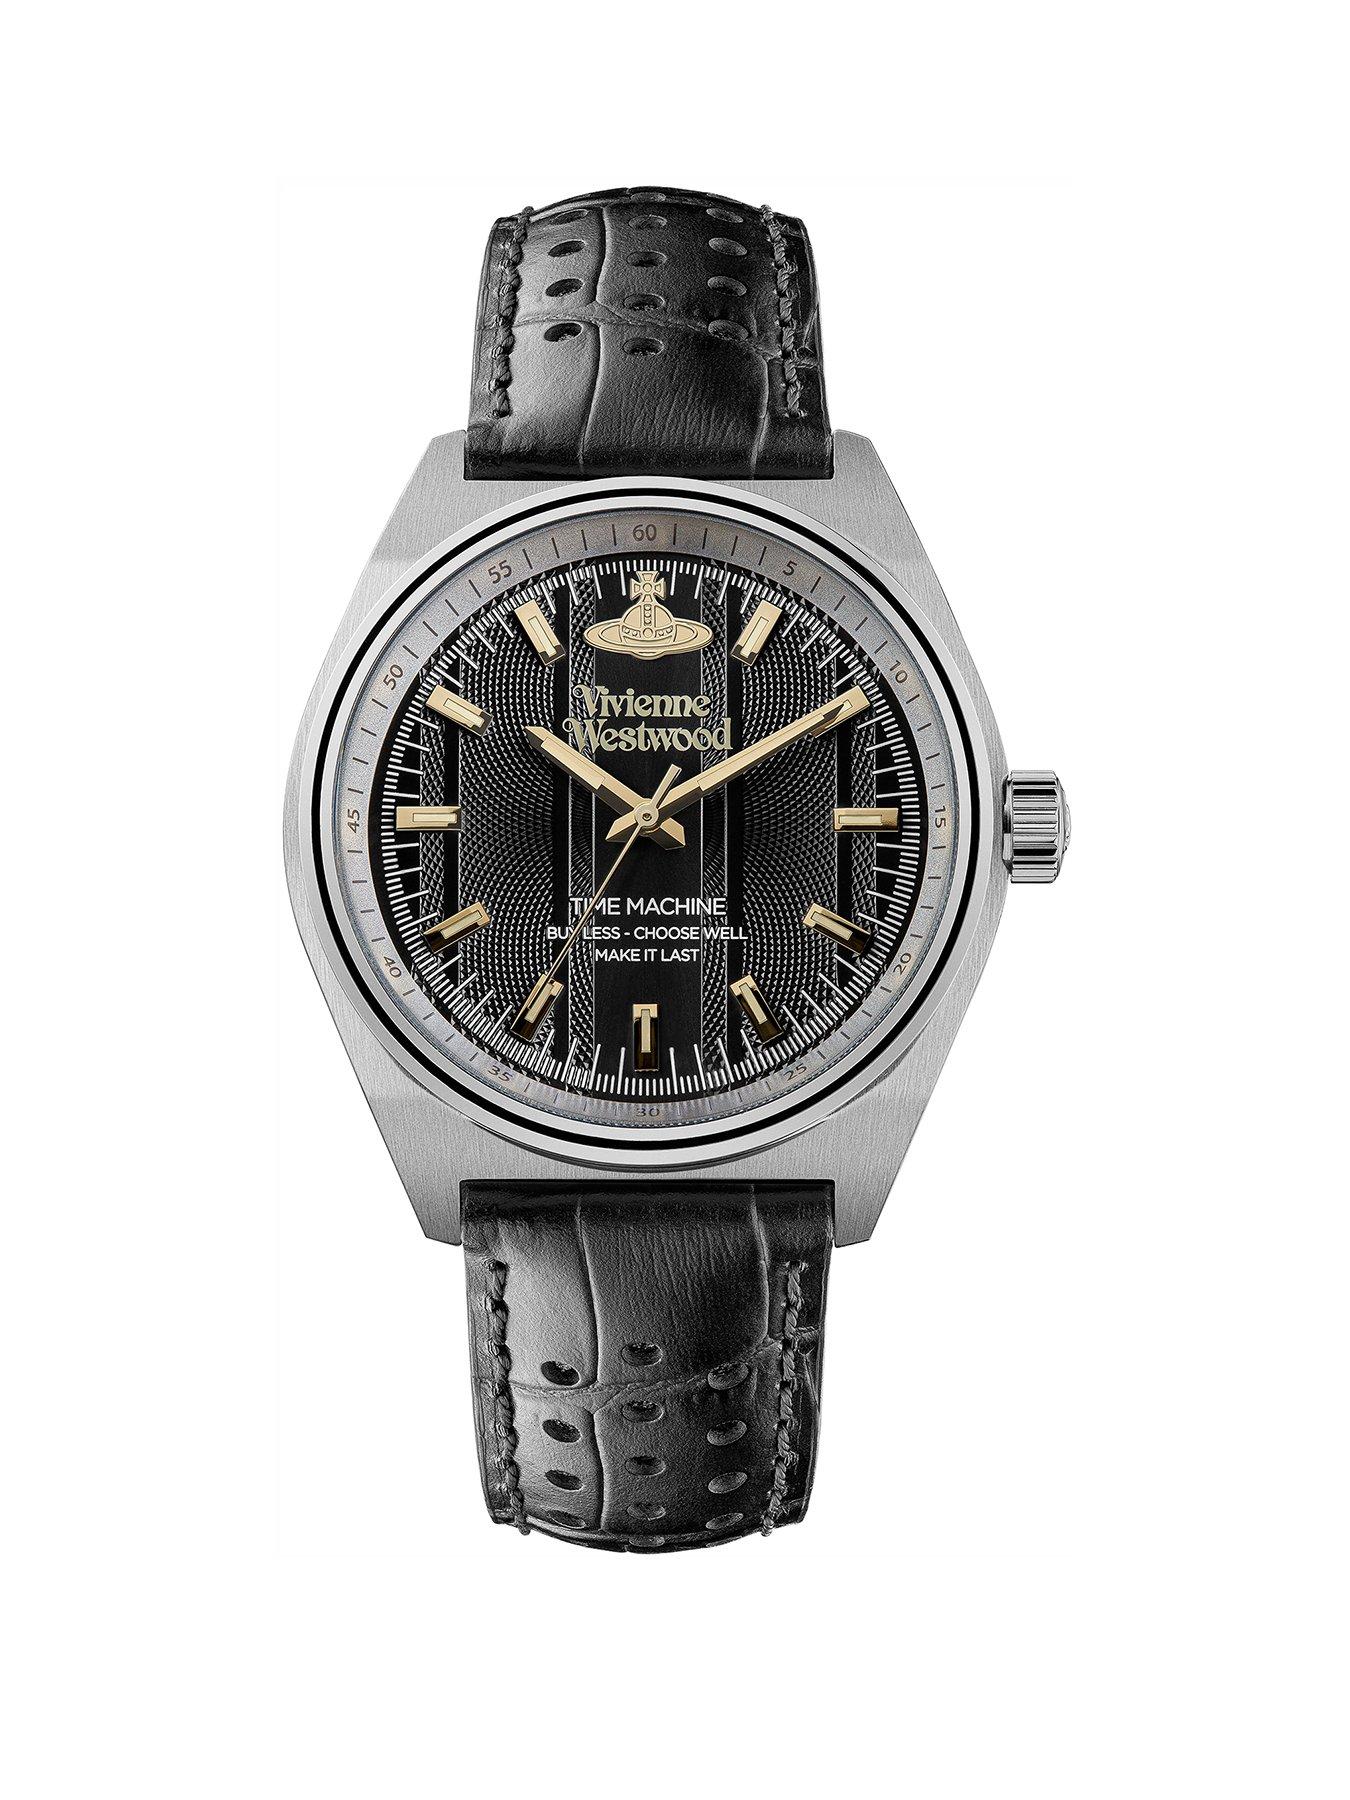  Men's Sydenham Quartz Watch with Black Dial & Black Leather Strap